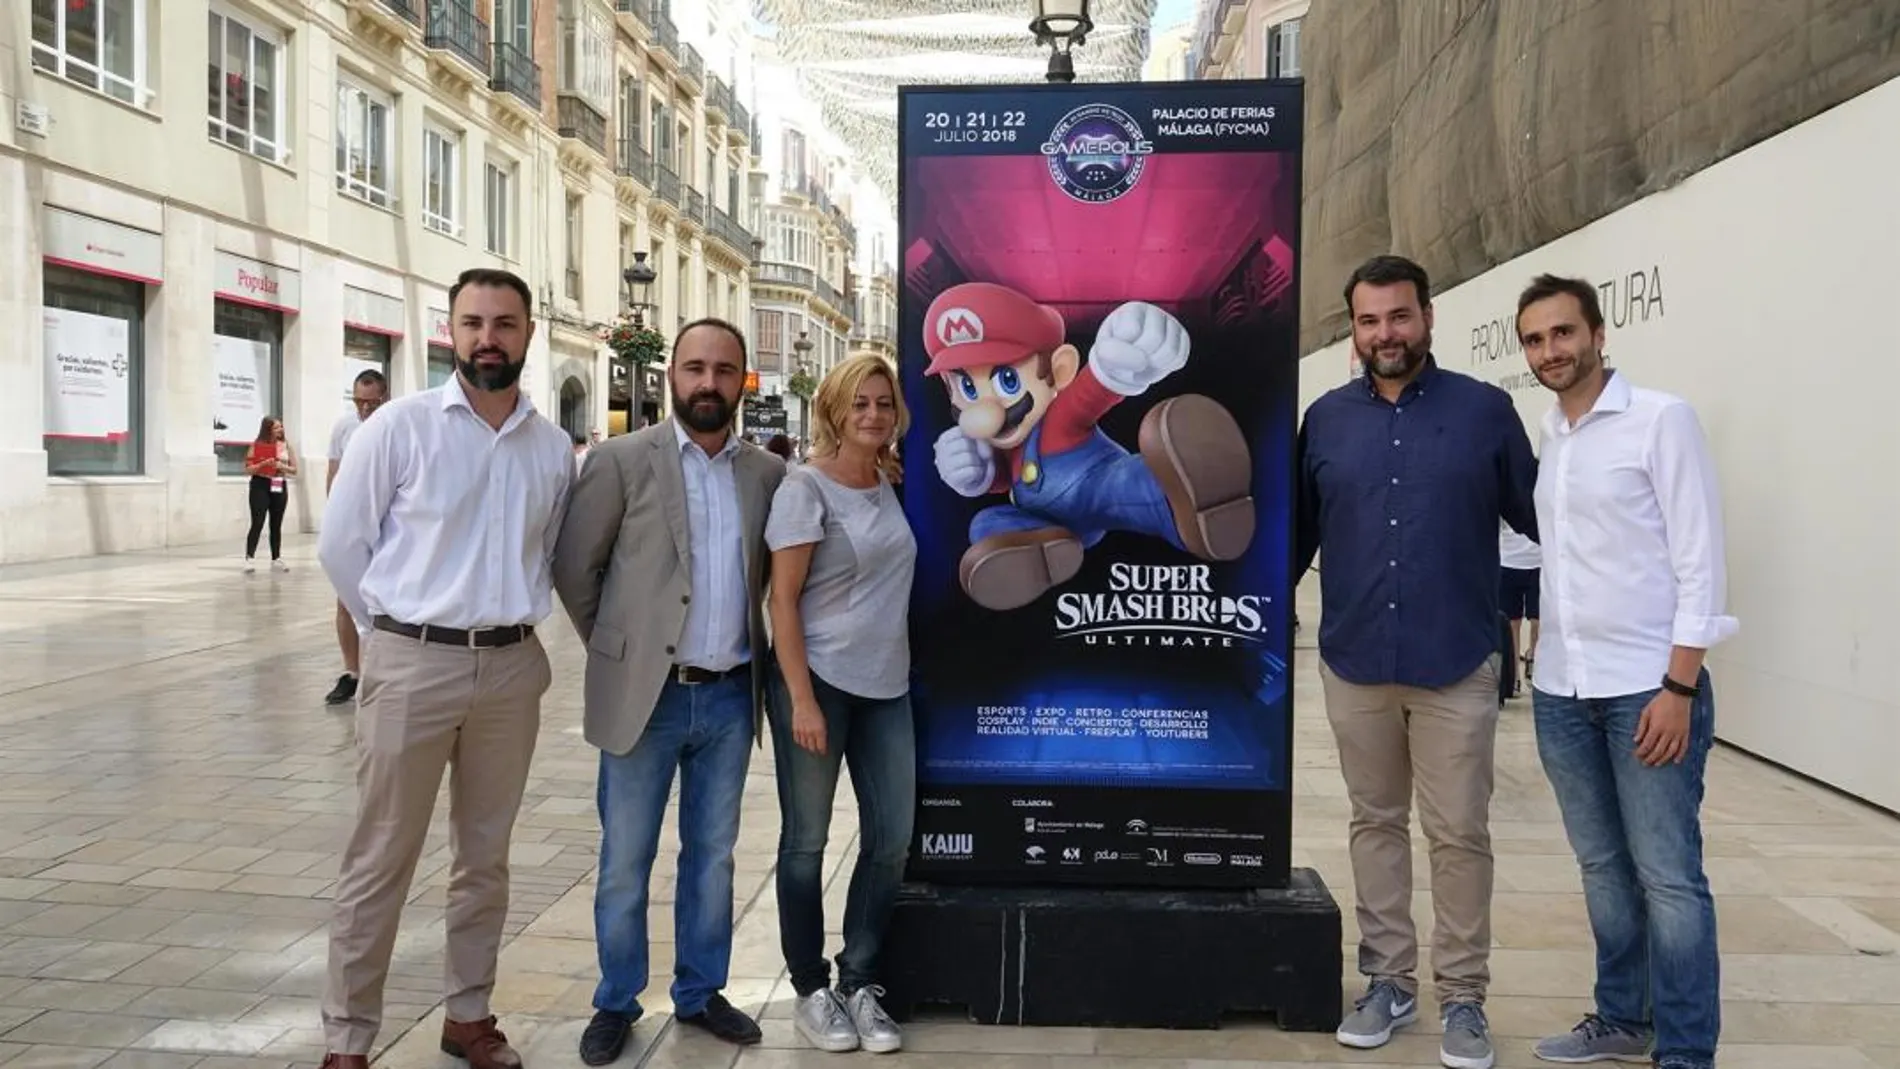 El Festival de Videojuegos Gamepolis prevé más de 50.000 visitantes y un impacto de siete millones de euros